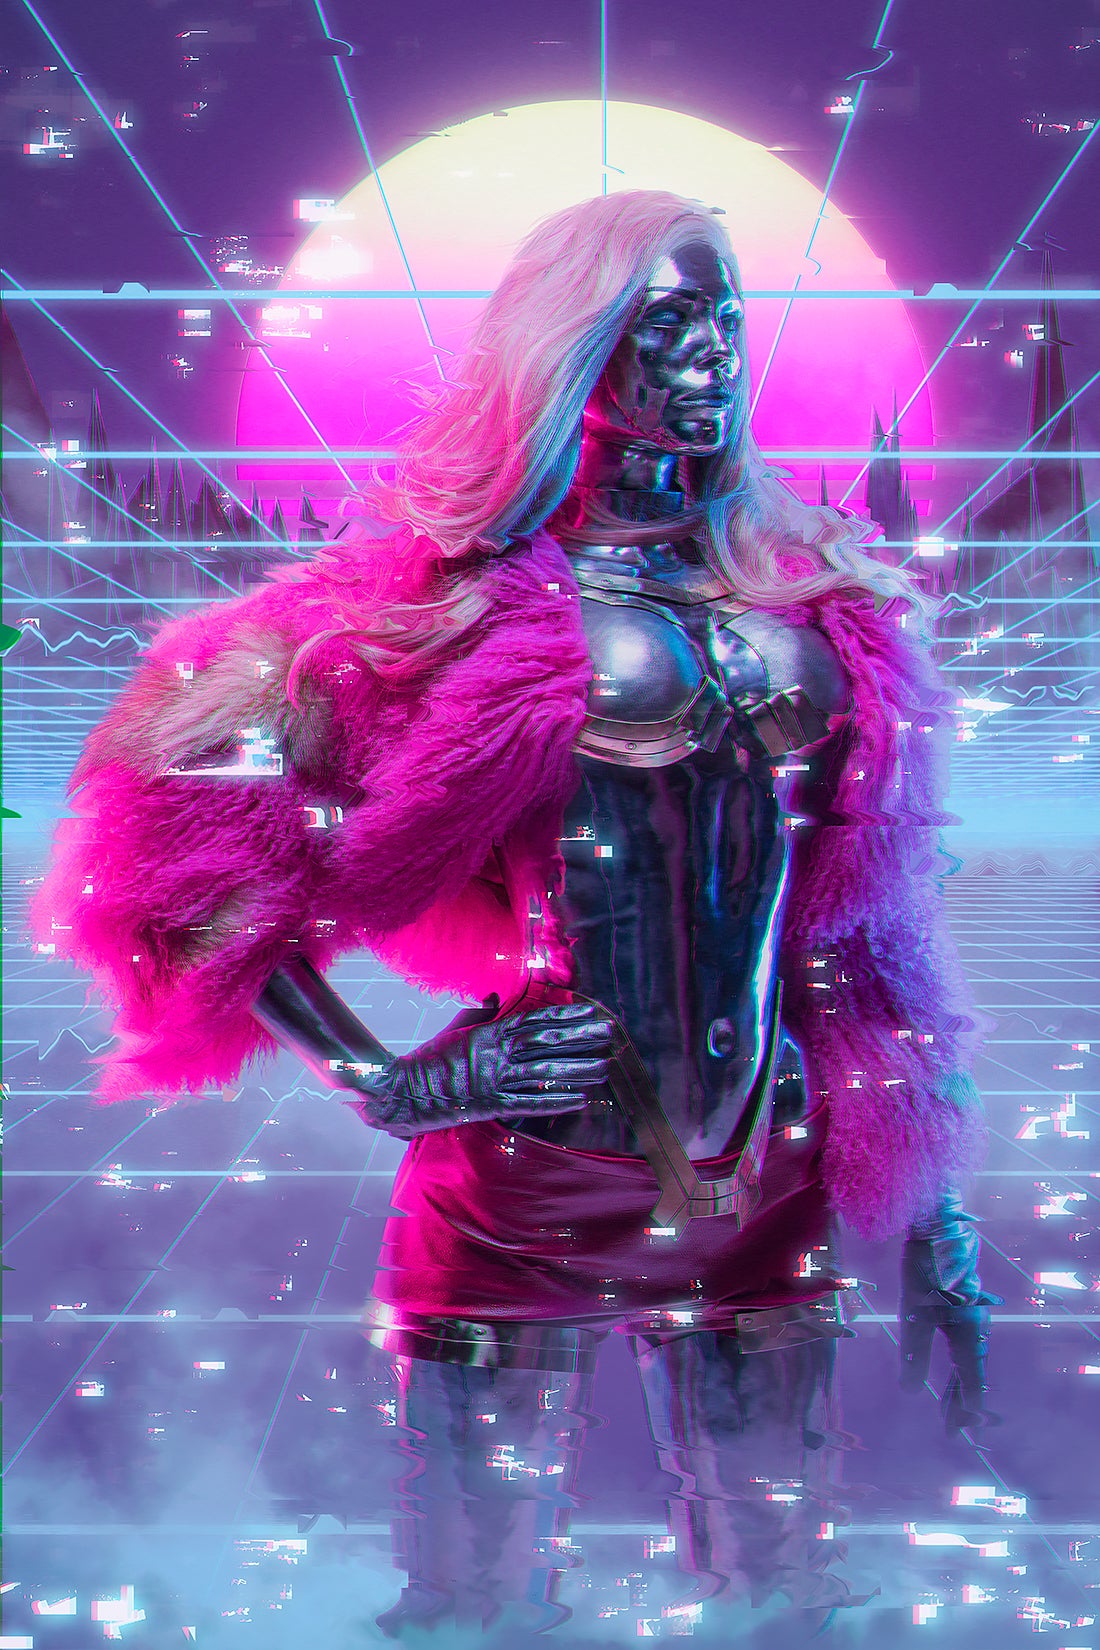 Lizzy Wizzy from Cyberpunk 2077 cosplay